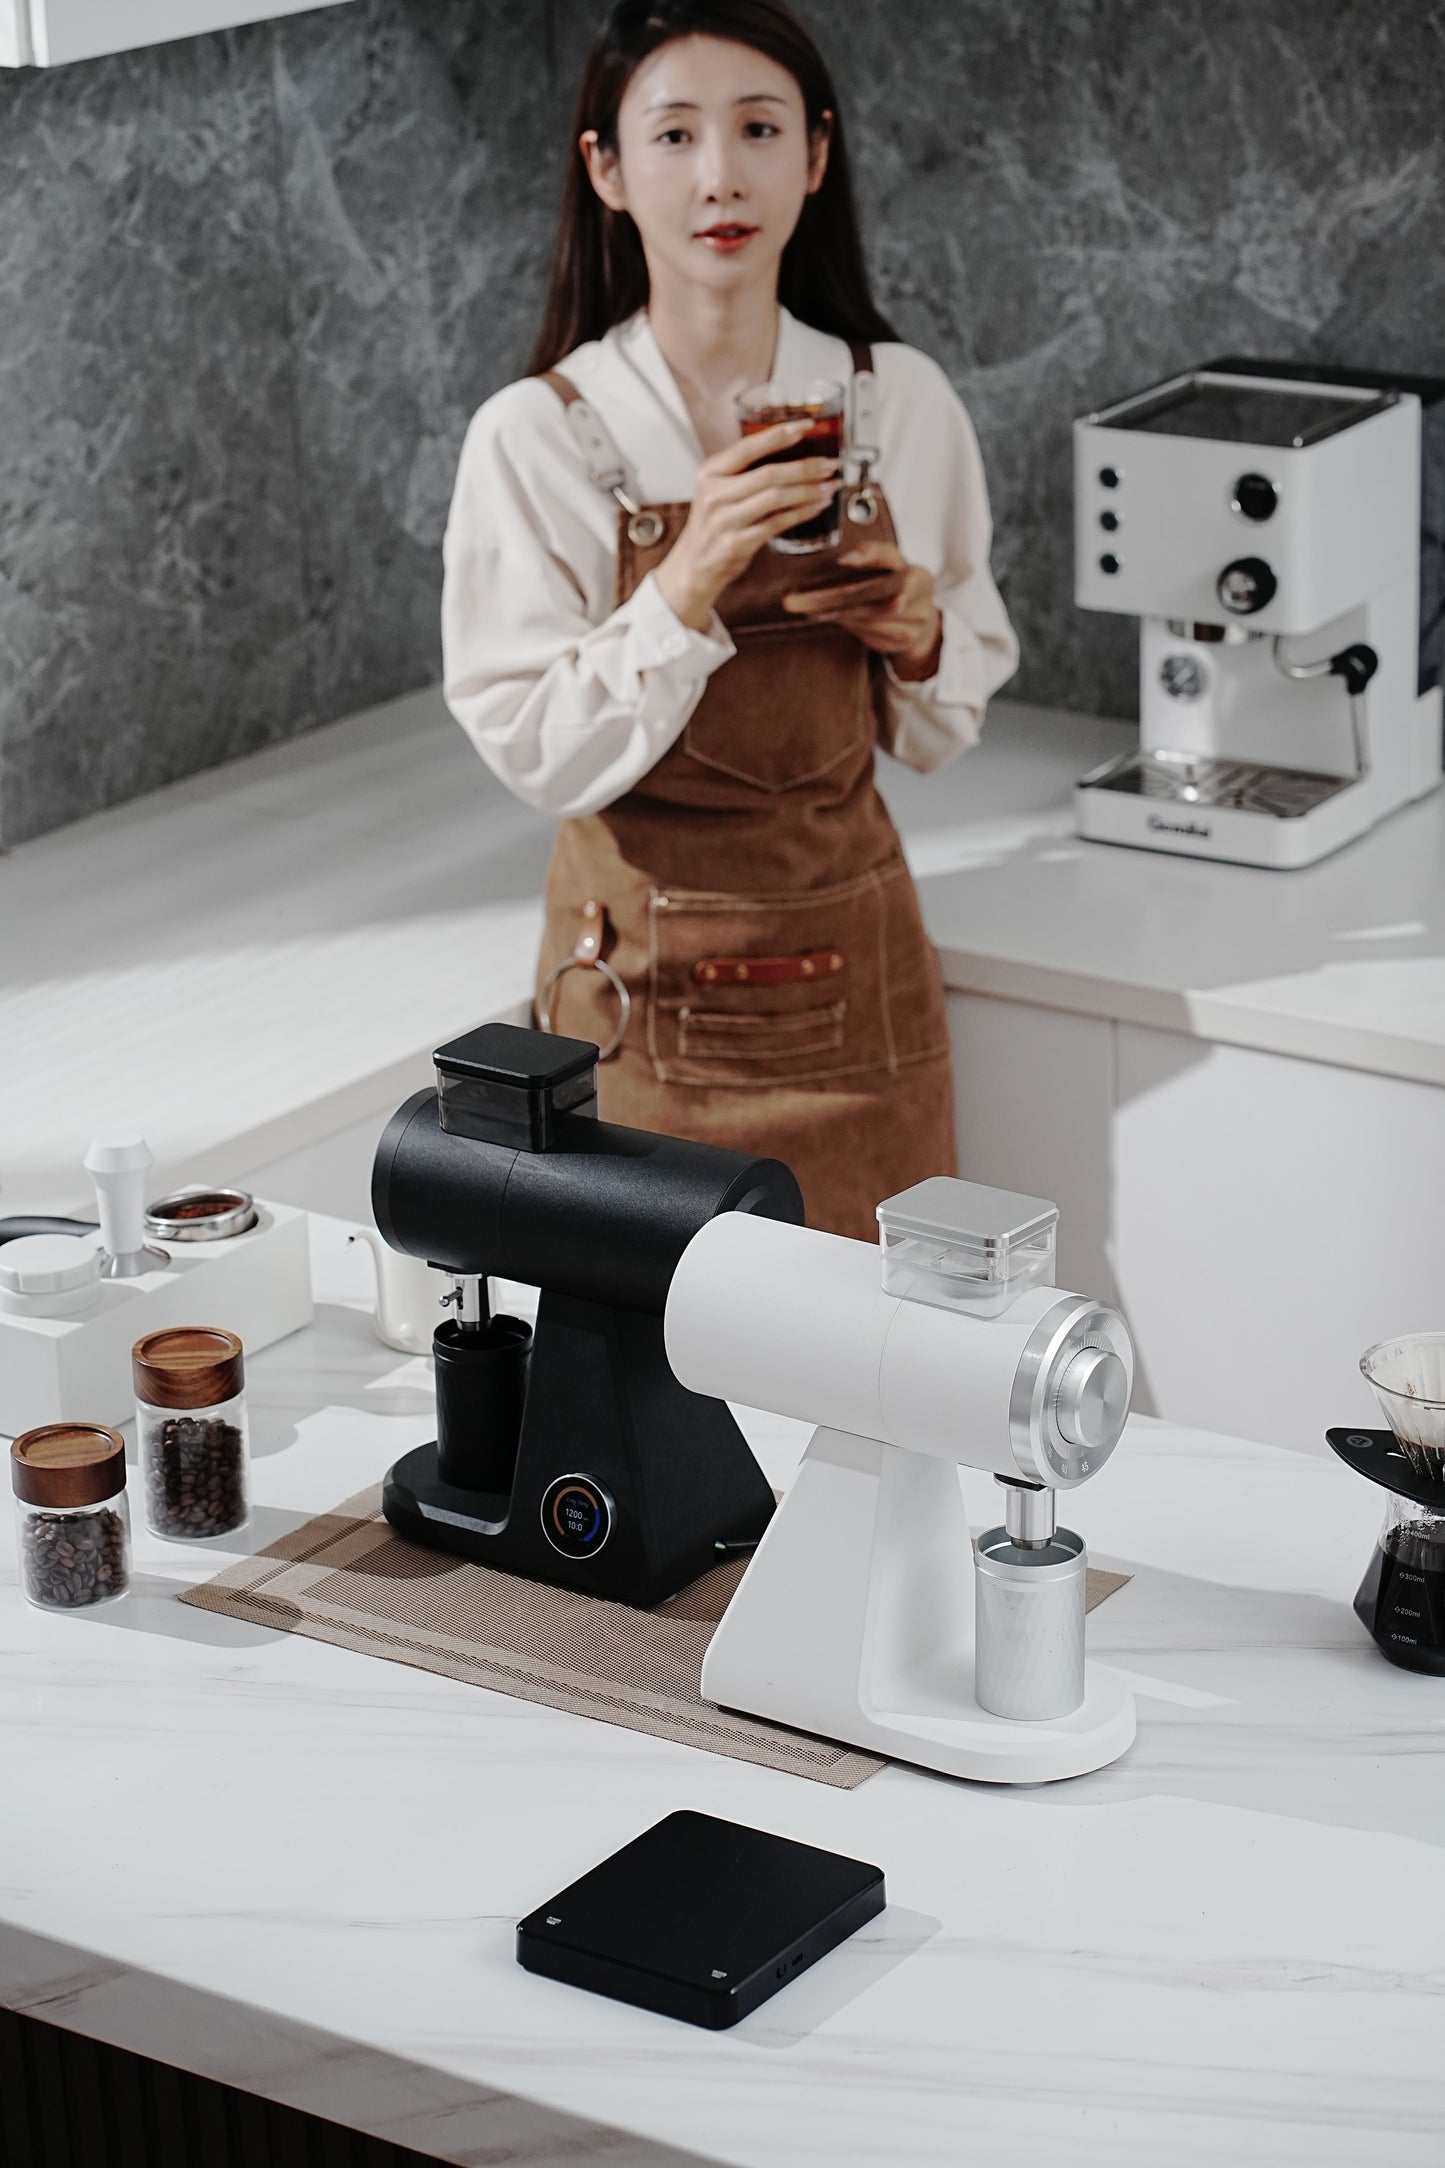 STARSEEKER 探索者 AK74 電動咖啡研磨機 | 現貨發售 送 1kg Muse "Sapphire" Blend 咖啡豆